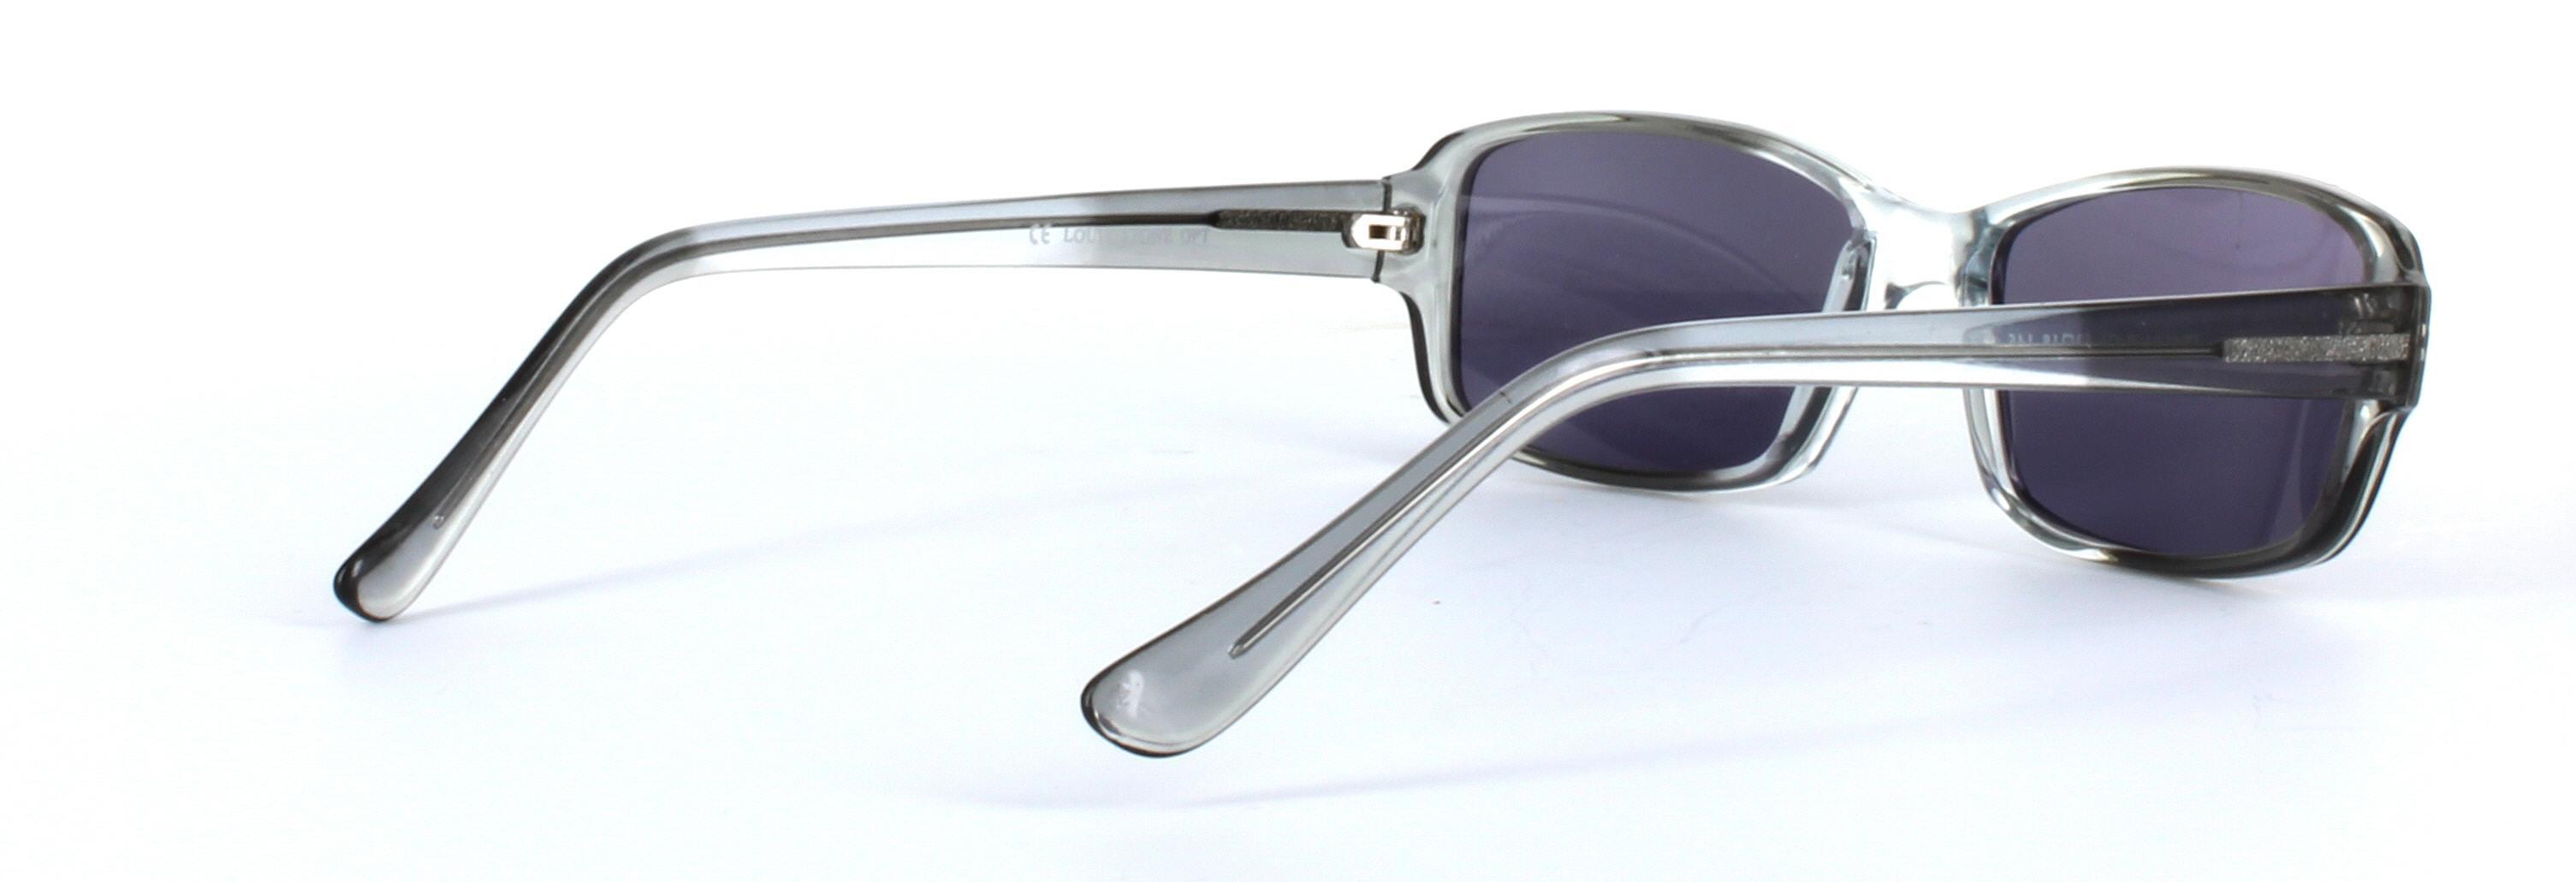 Chico Grey Full Rim Rectangular Plastic Sunglasses - Image View 4